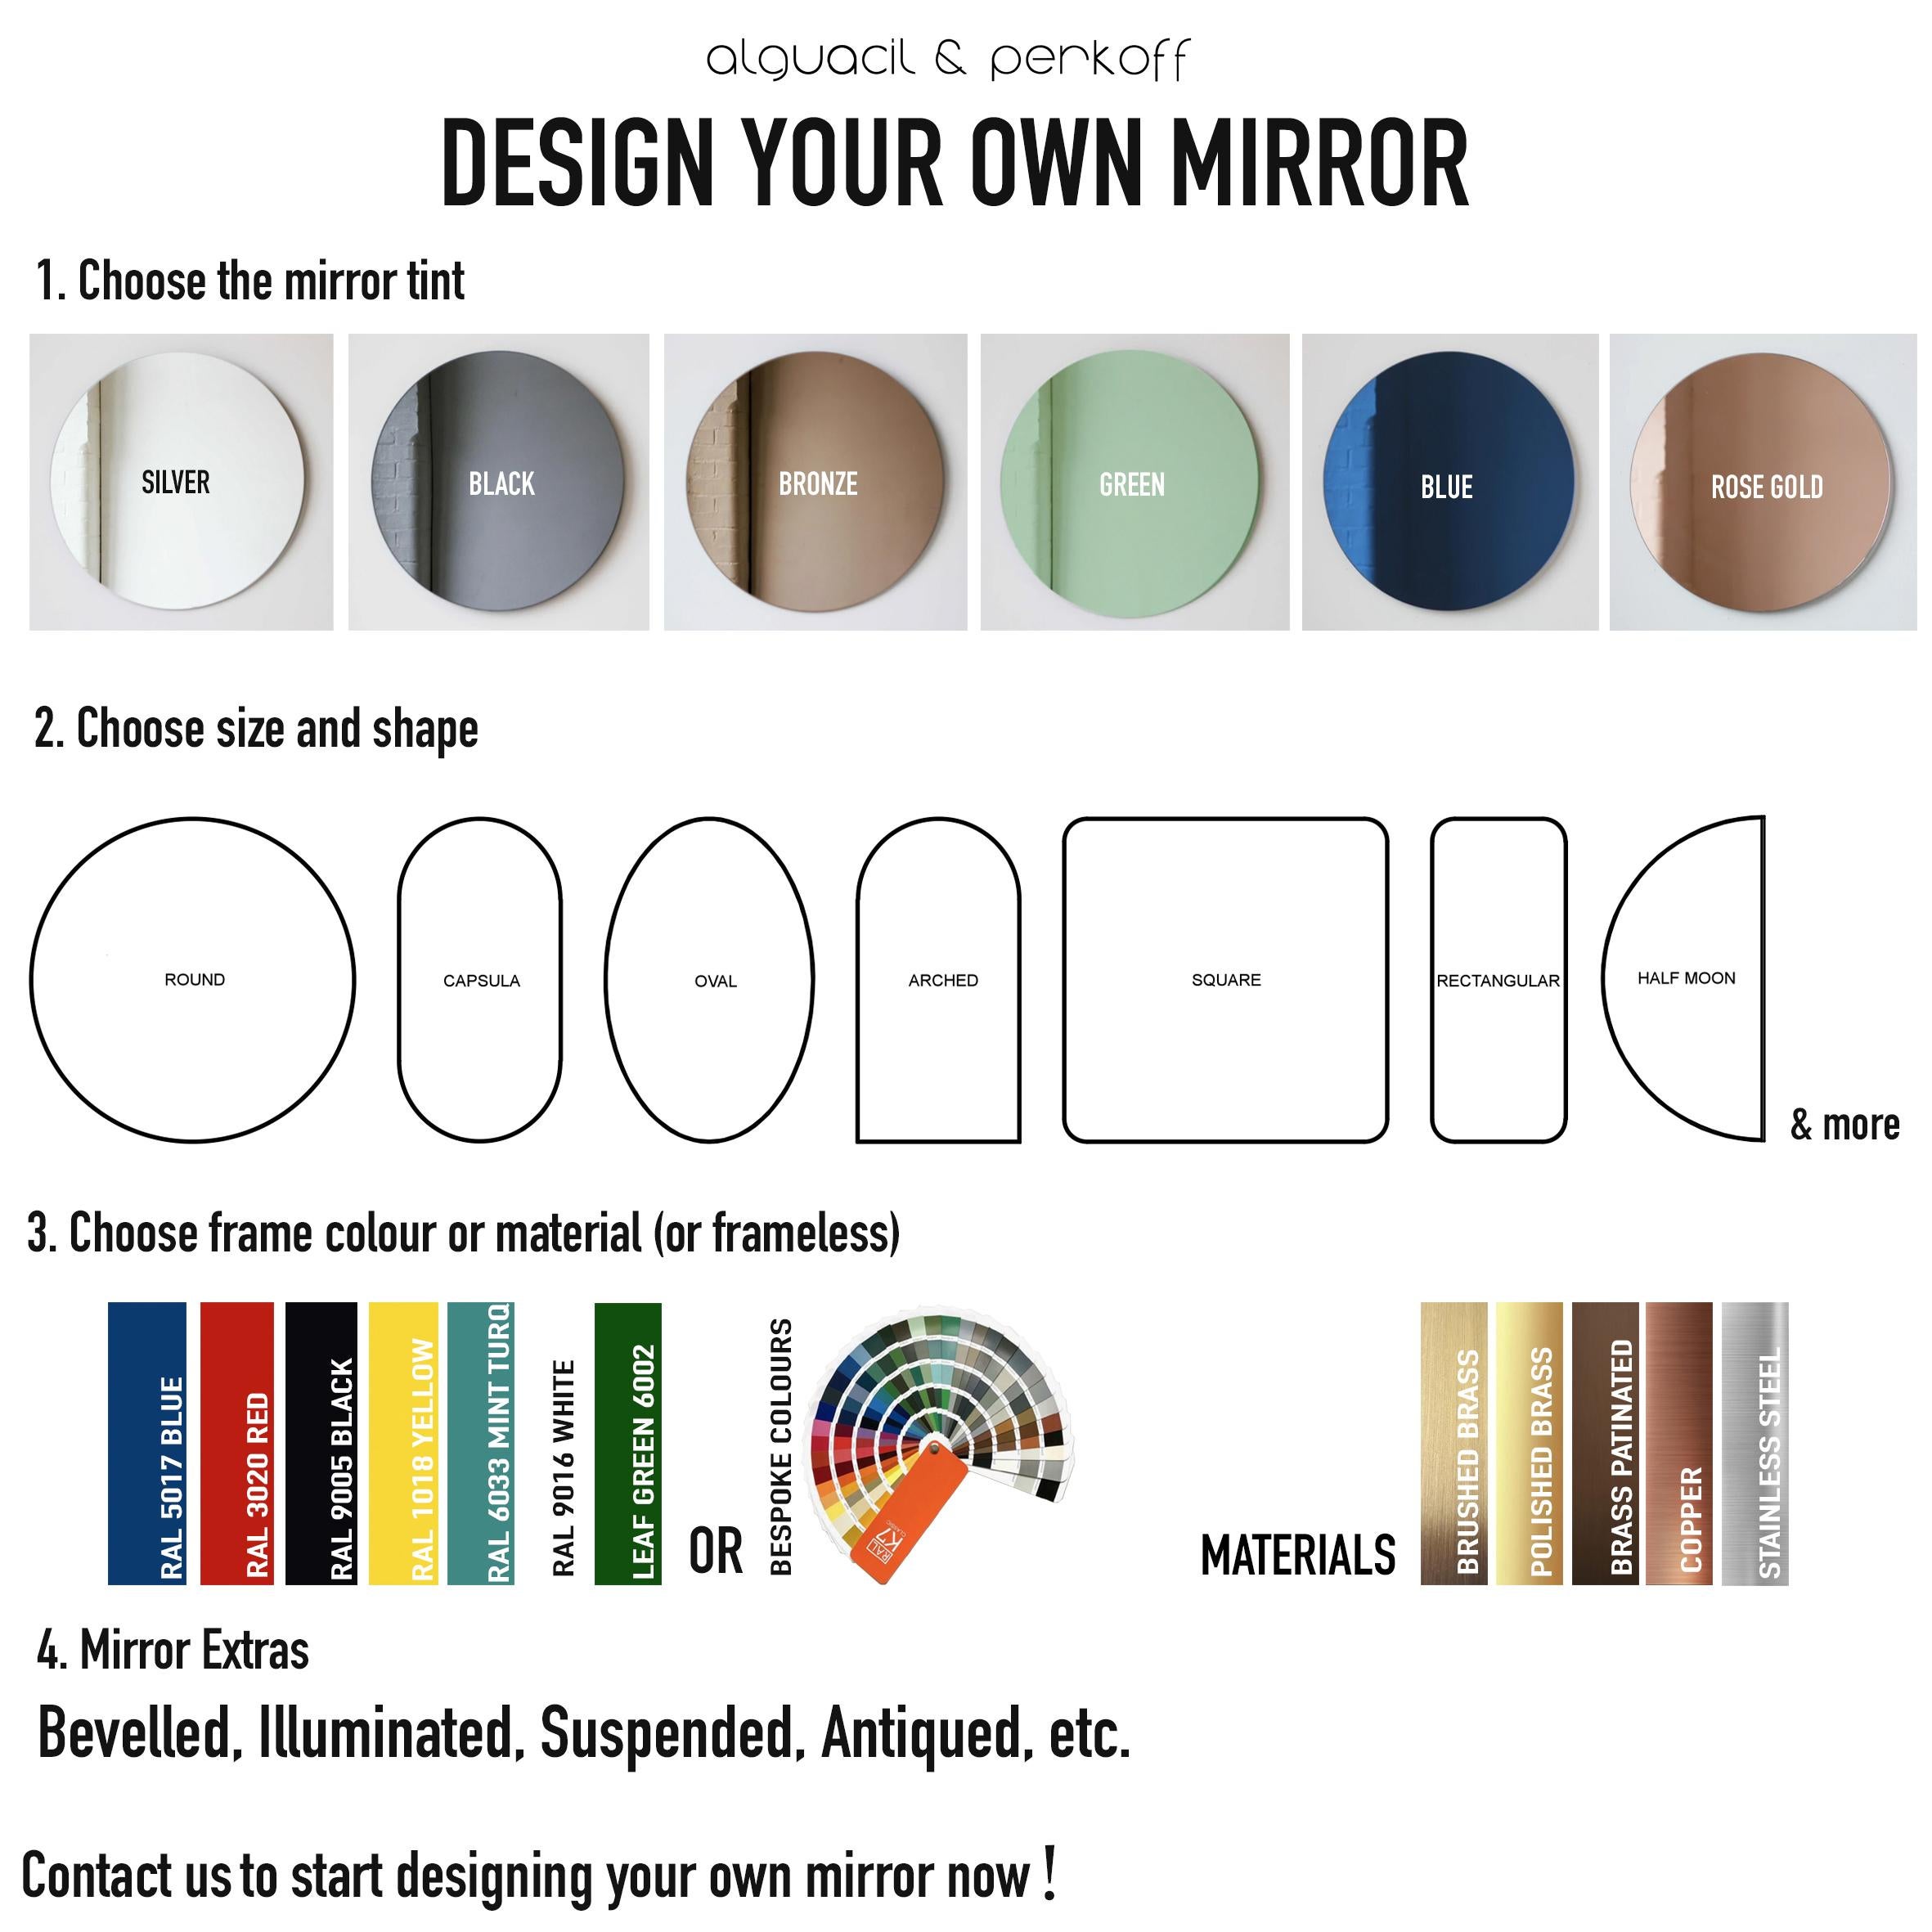 Miroir Orbis Dualis Mixed Black Tint Contemporary Round Mirror with Black Frame, Small (miroir rond contemporain avec cadre noir) en vente